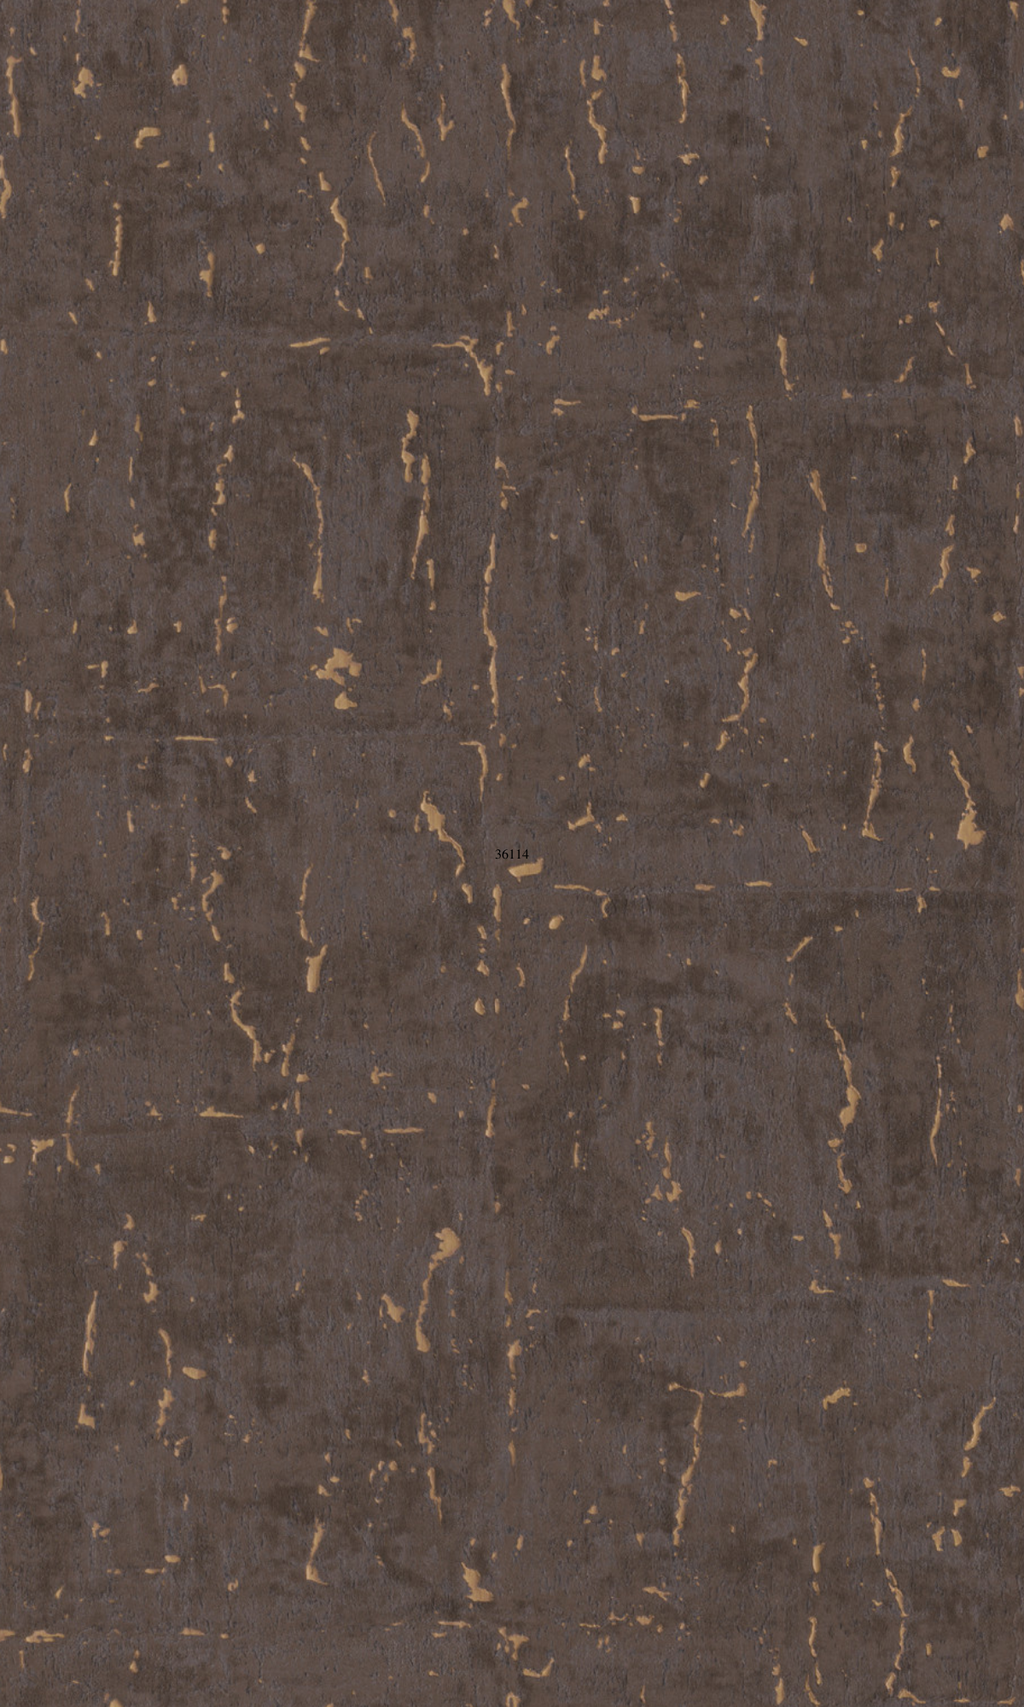 Marbled Metallic Golden Brown Natus Commercial Wallpaper C7167